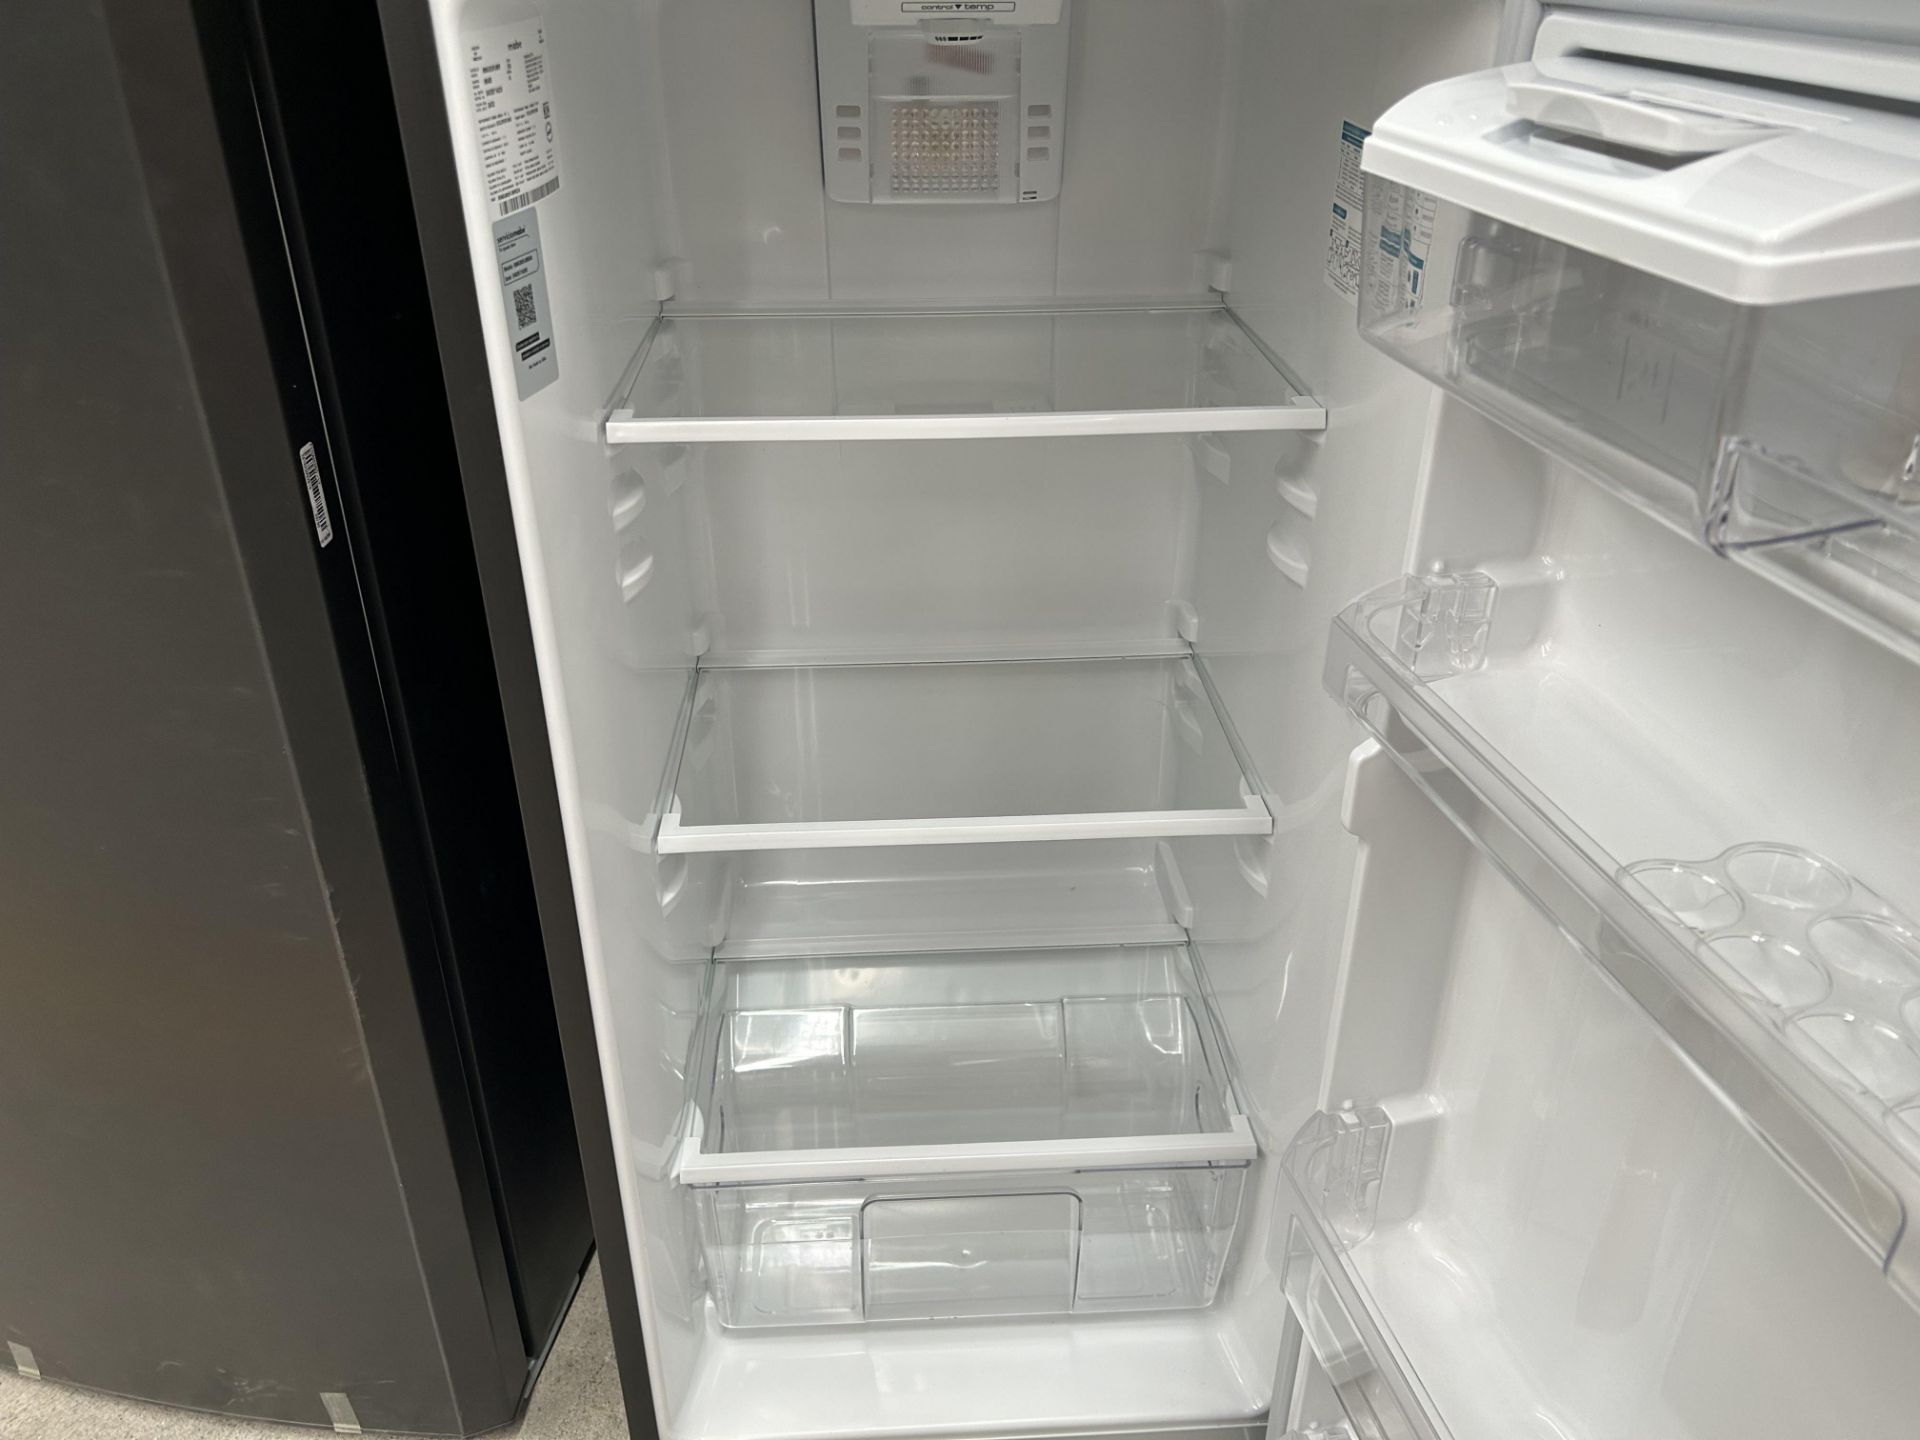 Lote de 2 refrigeradores contiene: 1 Refrigerador con dispensador de agua Marca MABE, Modelo RMA300 - Image 6 of 10